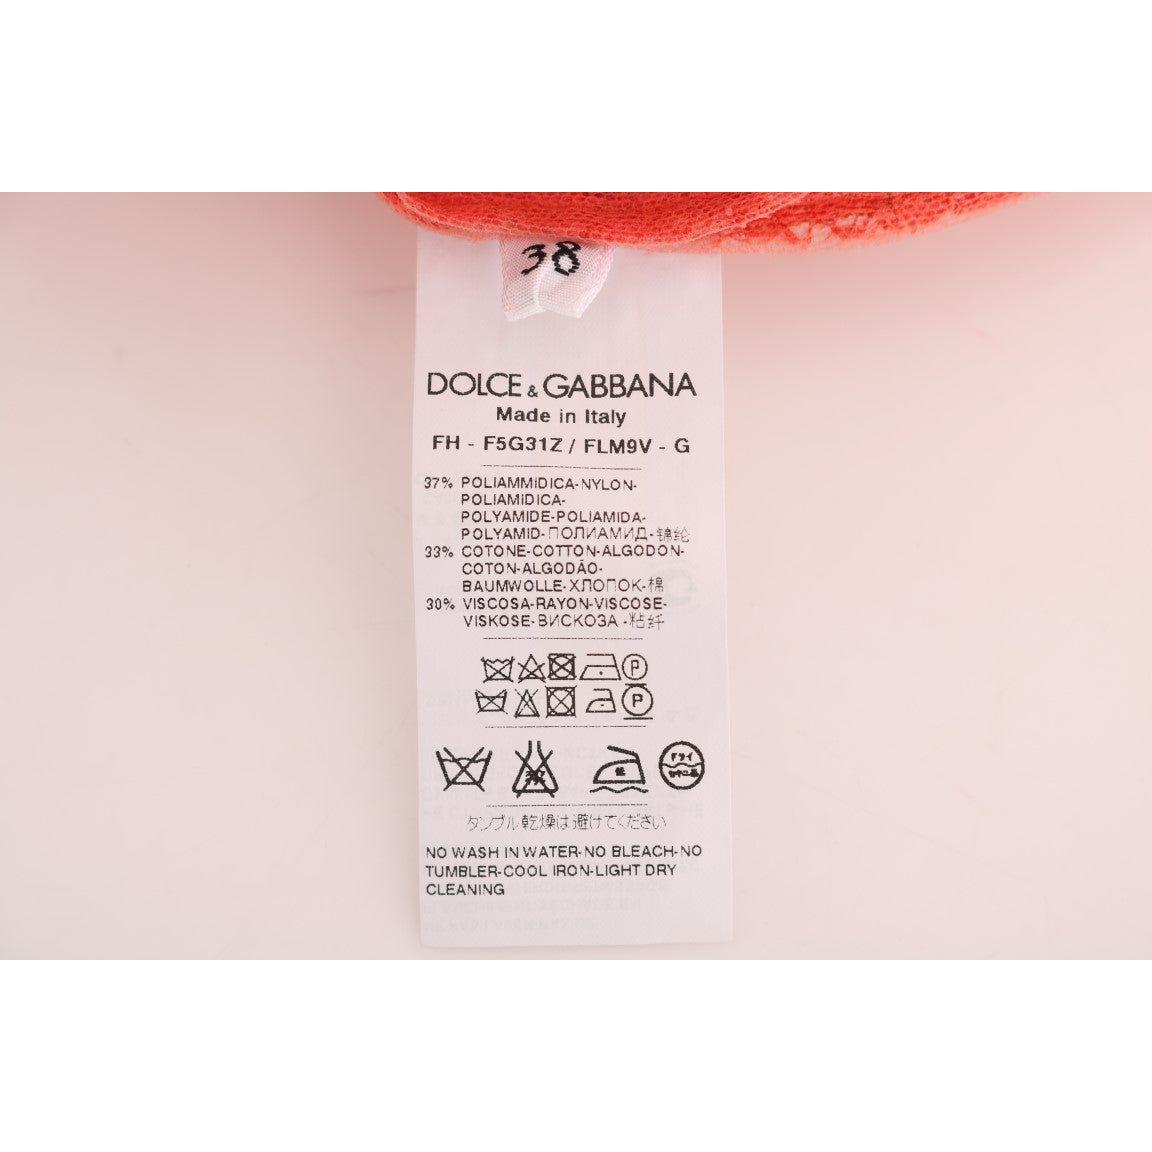 Dolce & Gabbana Elegant Orange Floral Lace Crystal Cardigan Blouse orange-crystal-buttons-floral-lace-blouse 460111-orange-crystal-buttons-floral-lace-blouse-5.jpg